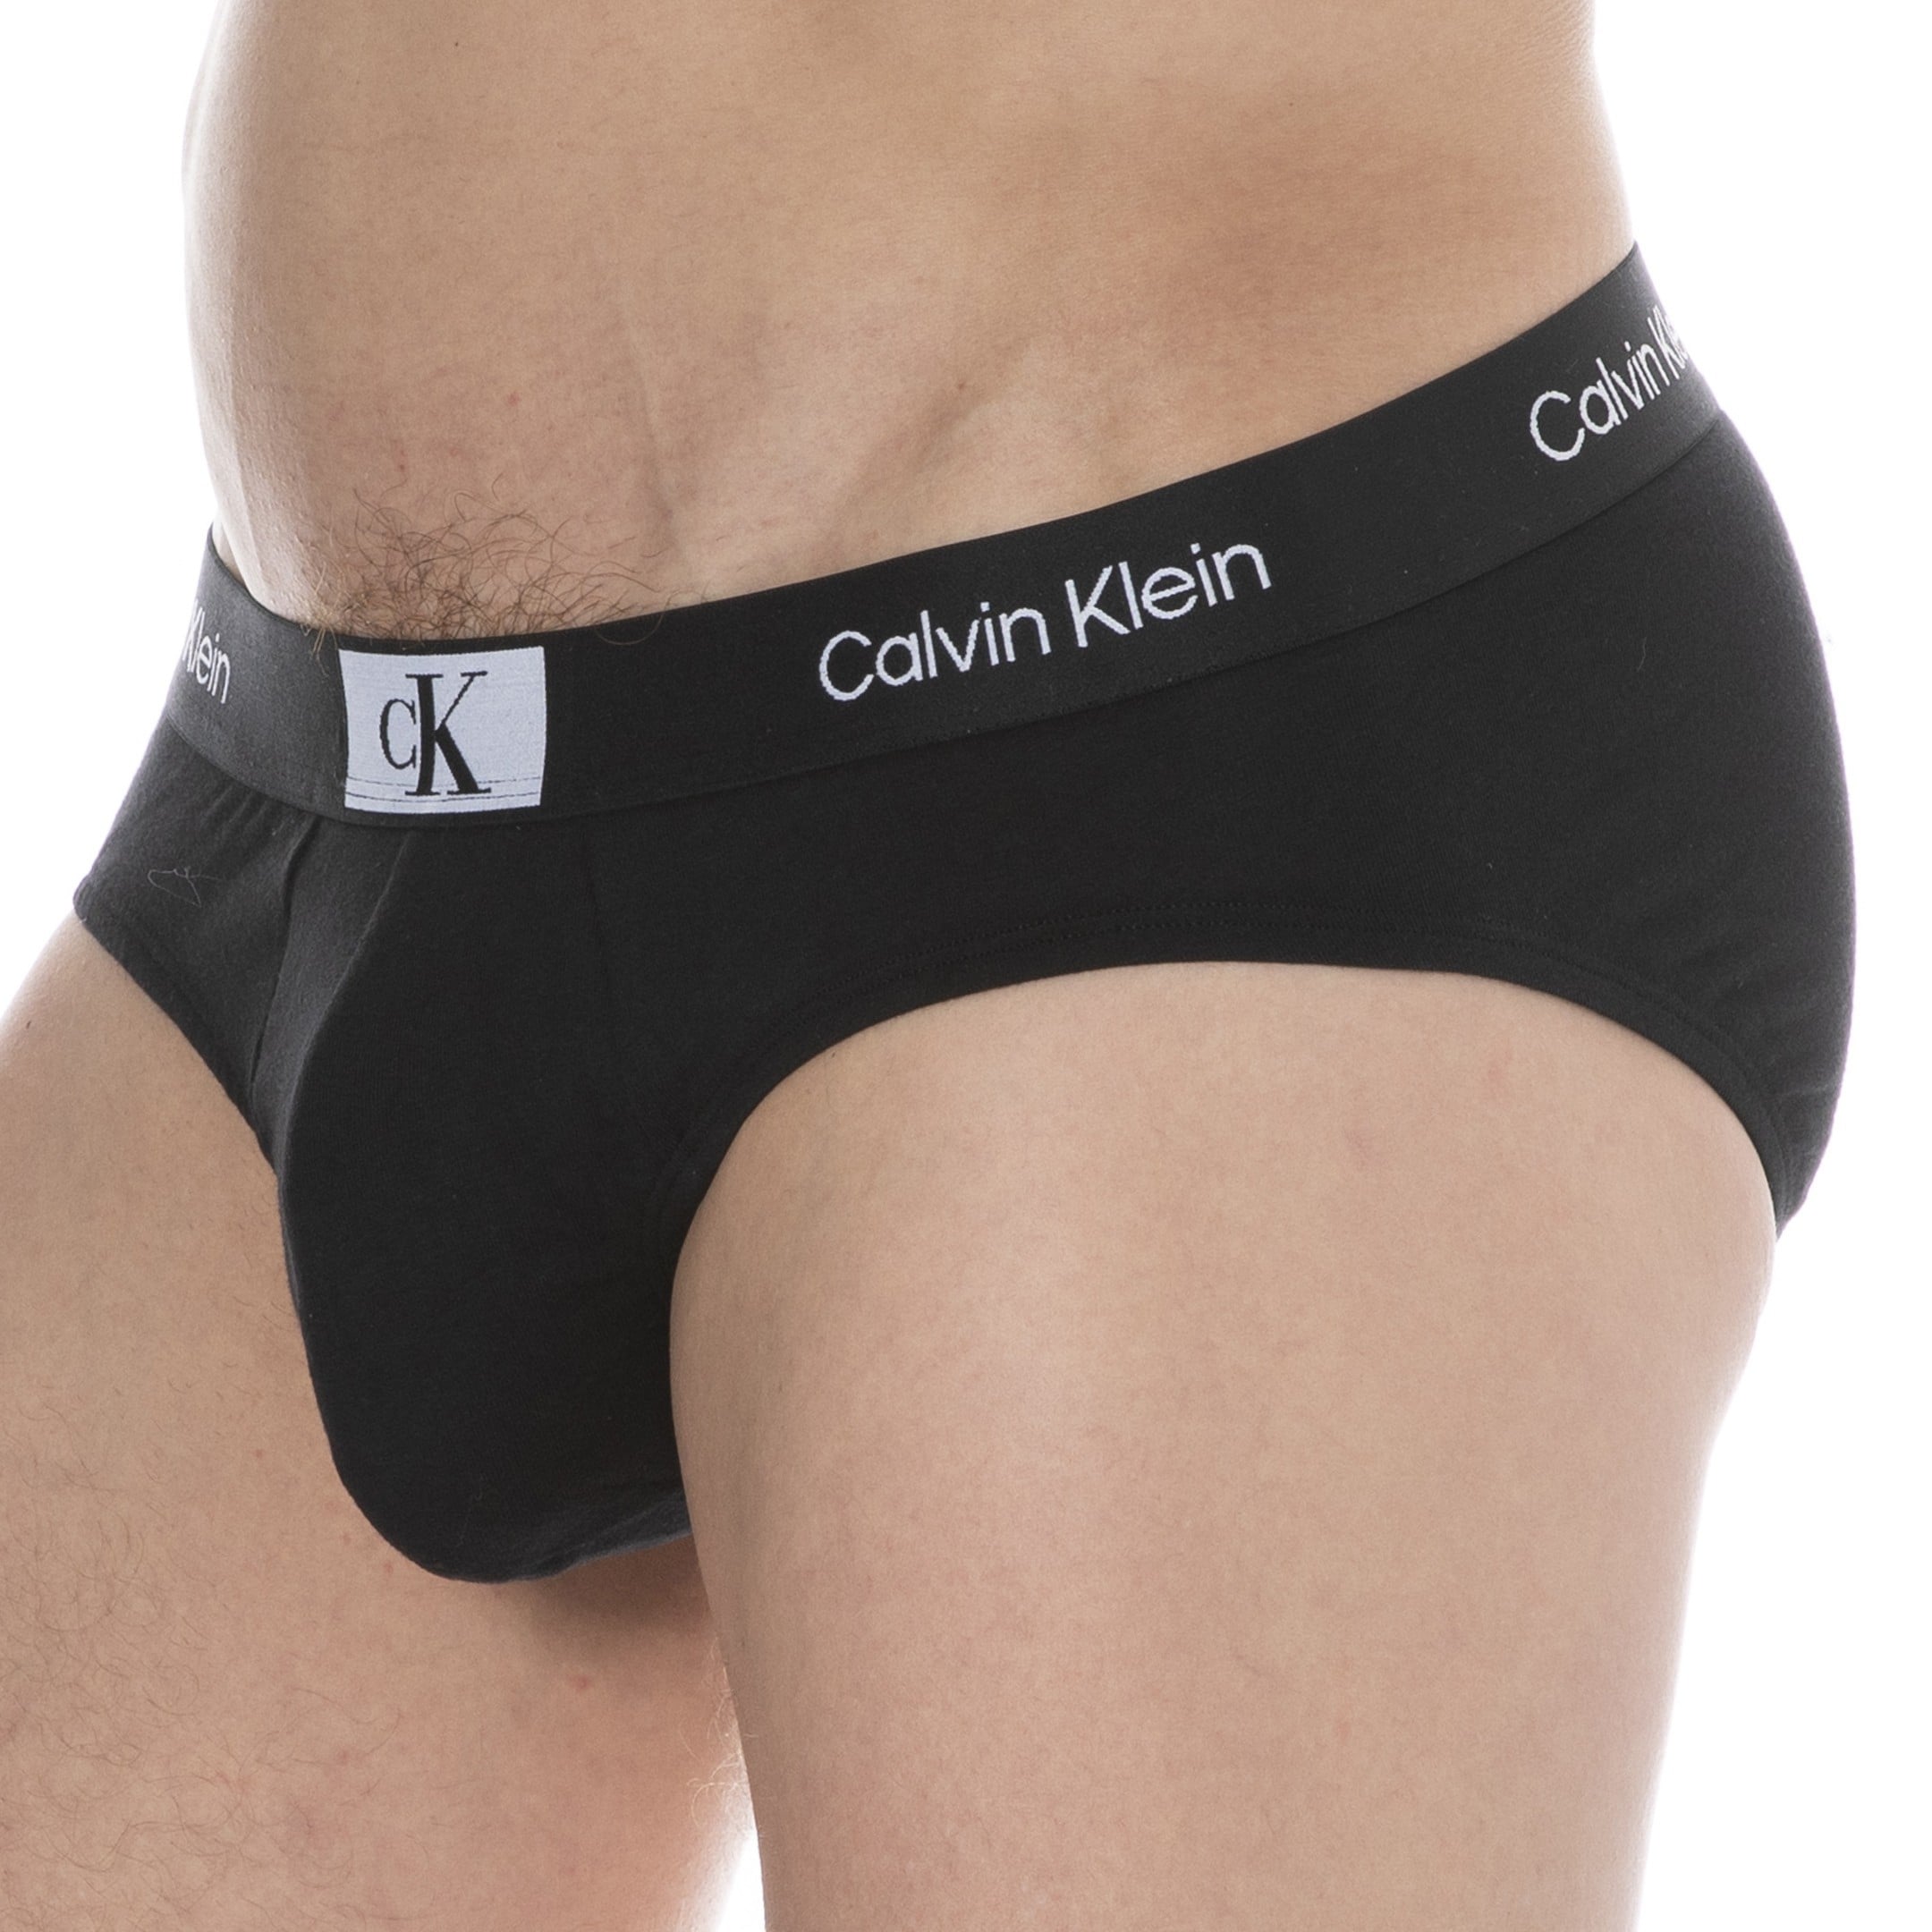 Calvin Klein Ck96 Briefs - Black